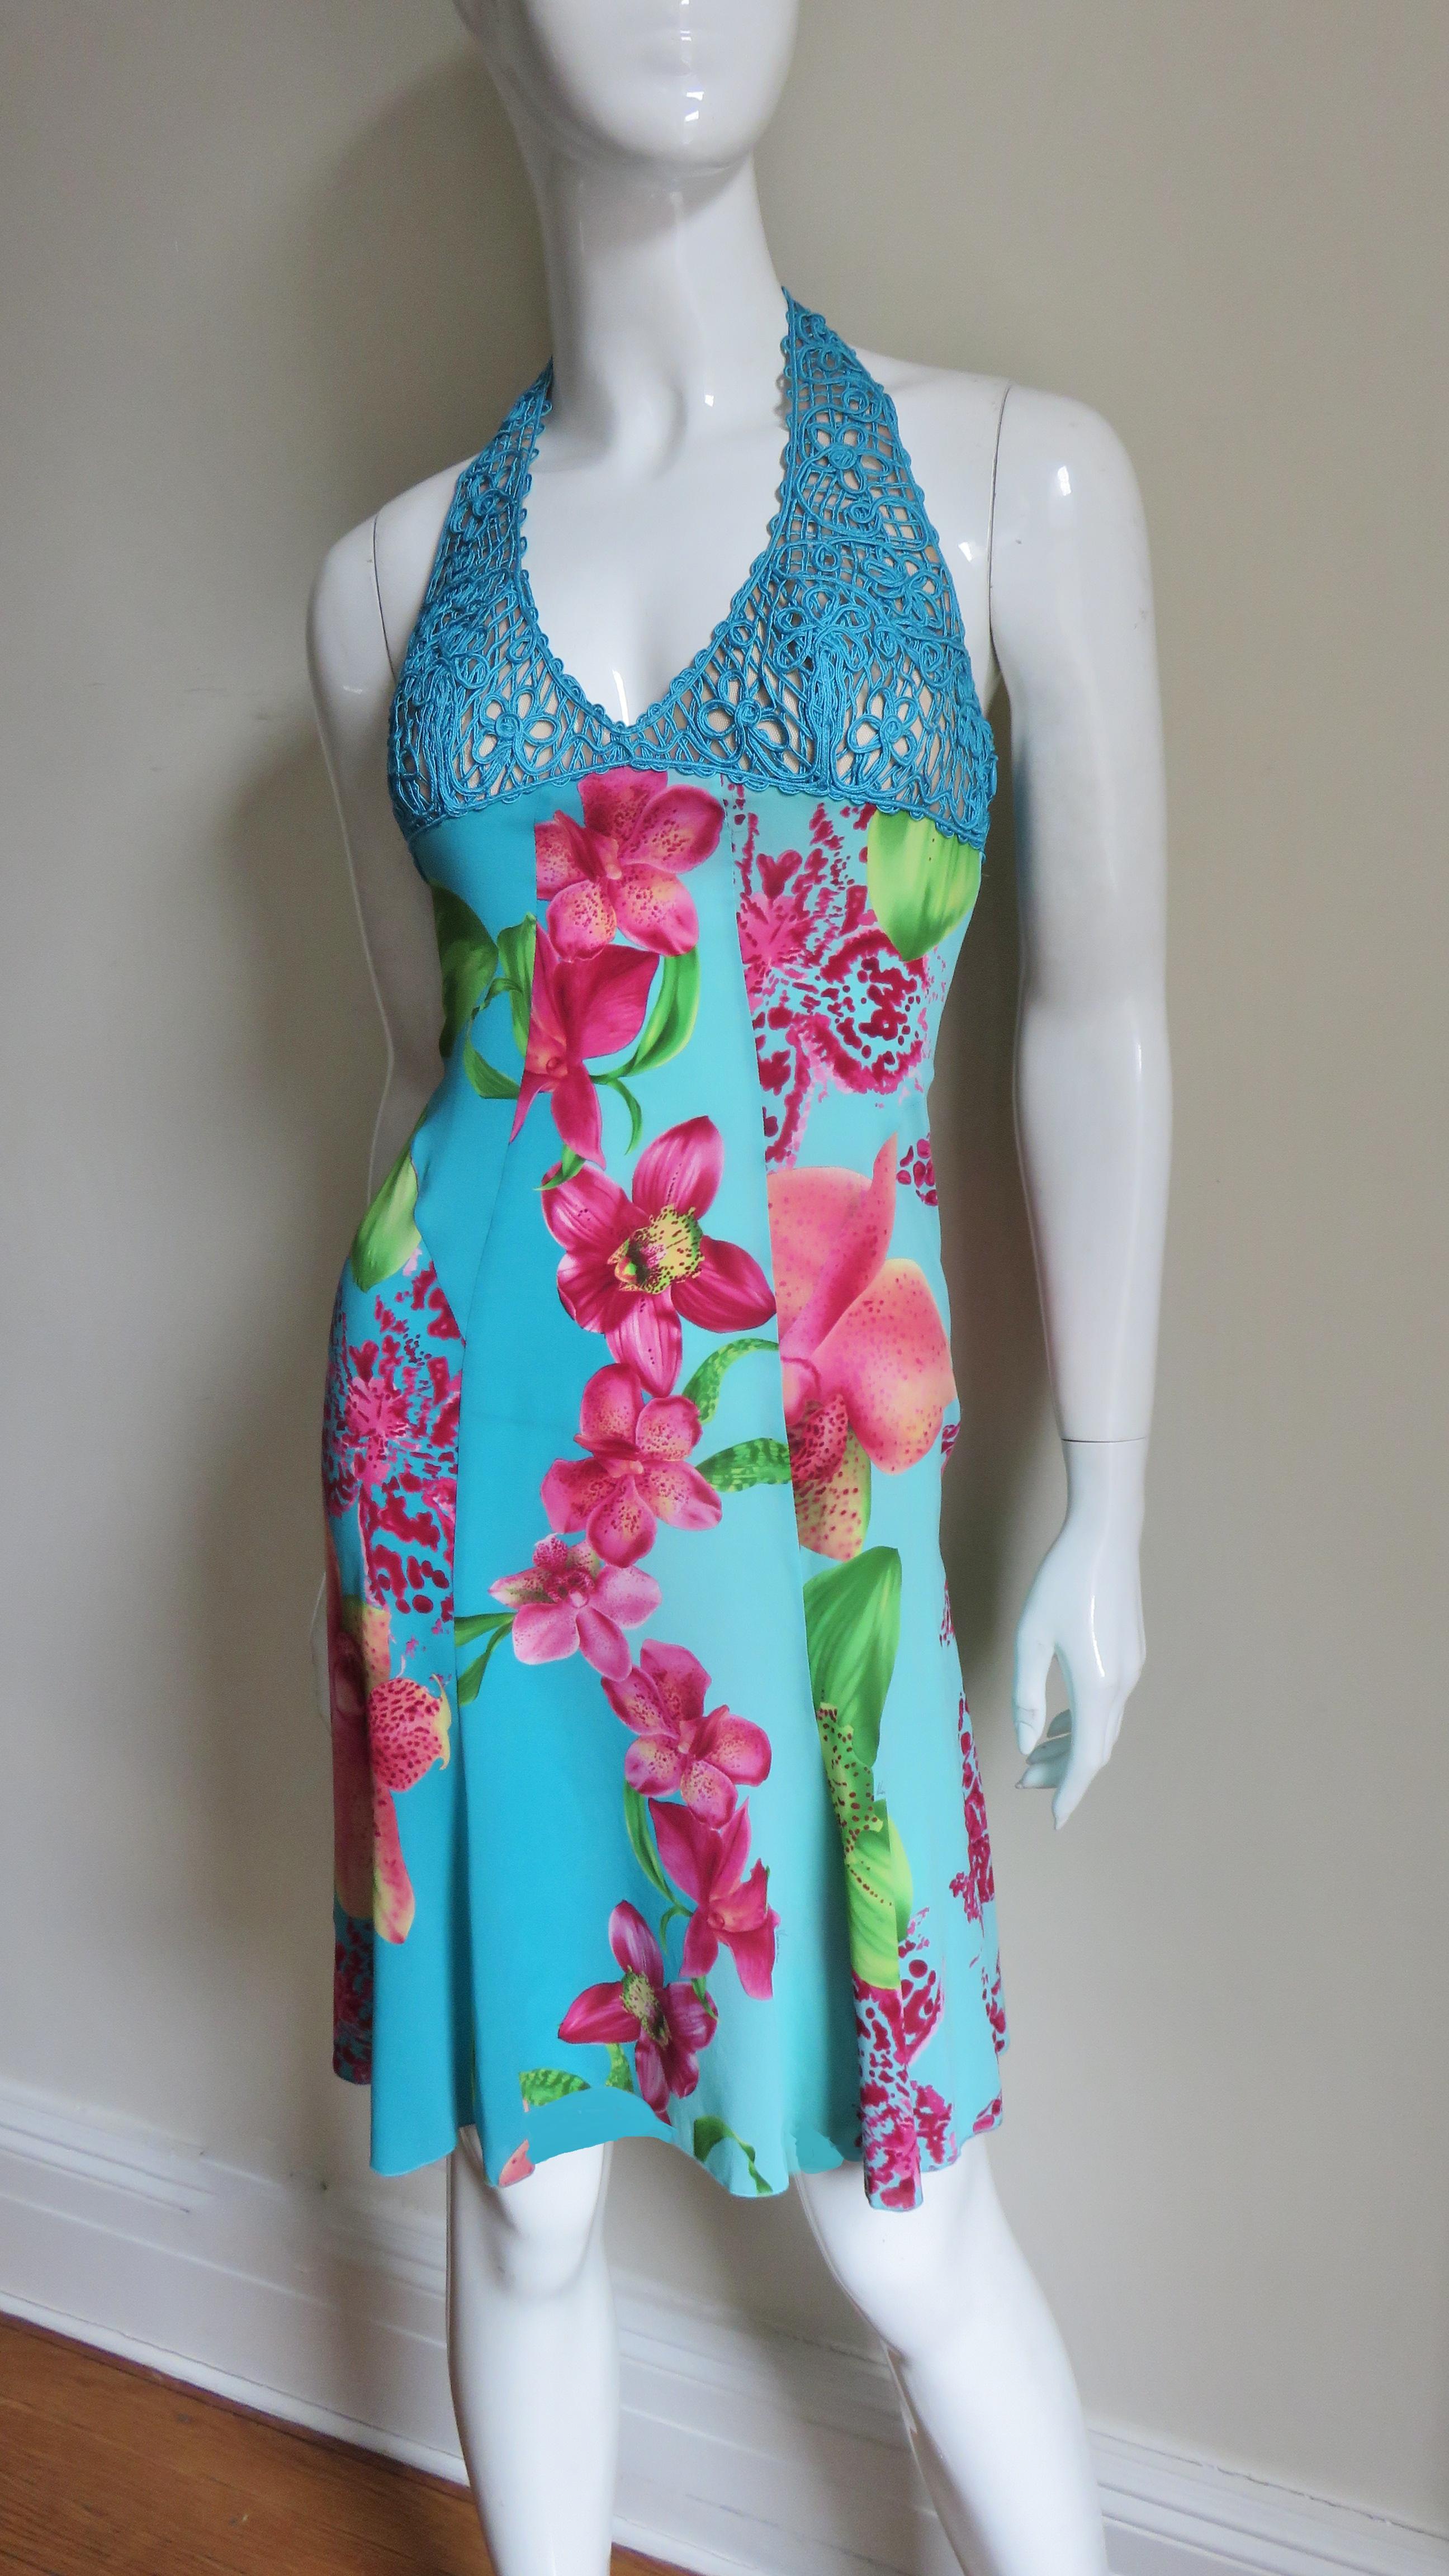 Fabuleuse robe dos nu en soie fine extensible de Versace, imprimée d'un lys rose coloré sur fond turquoise. L'encolure licou et la poitrine sont constituées de cordons de soie complexes formant un motif floral. Le corps de la robe est composé de 4